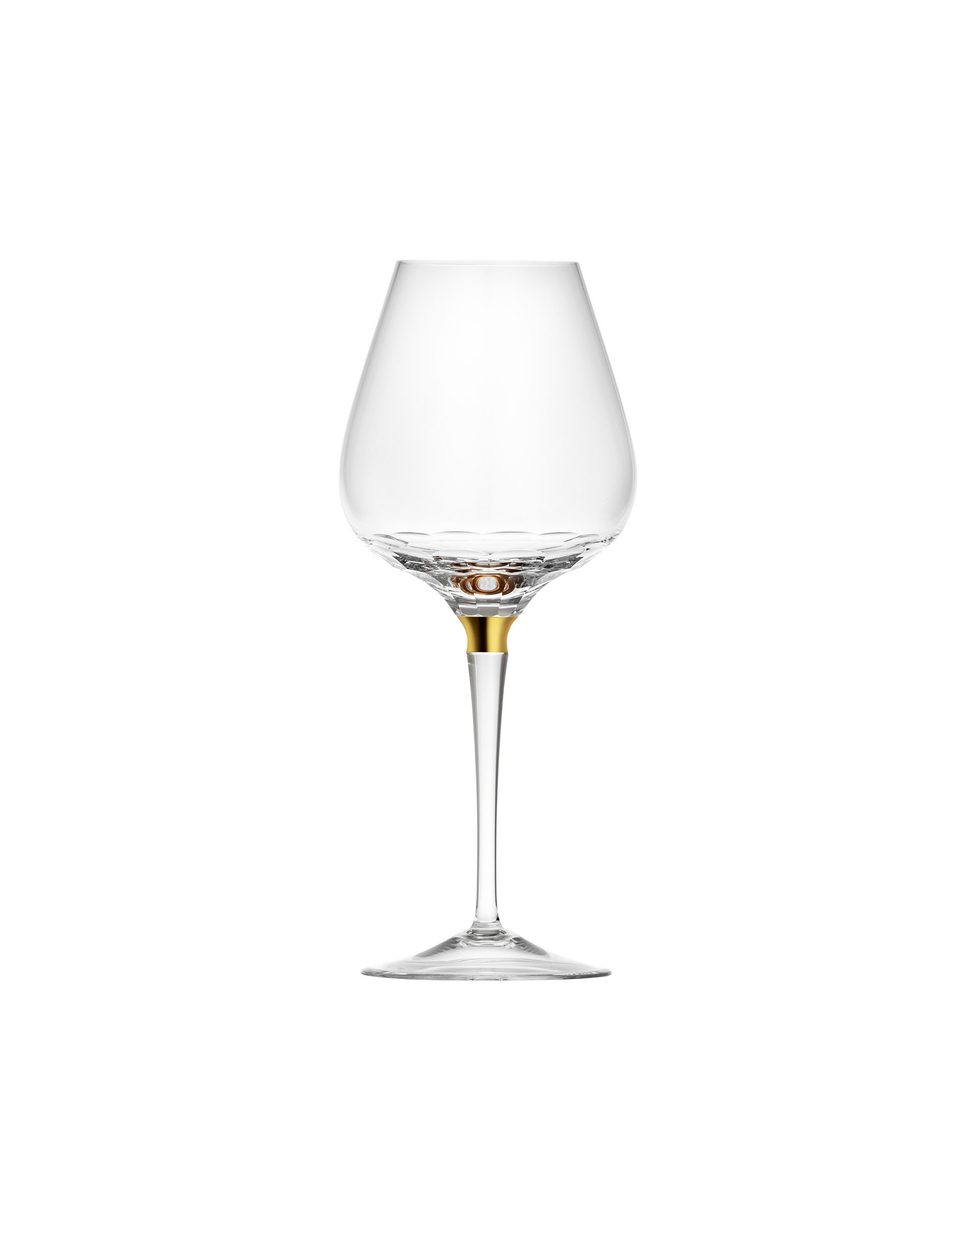 Jewel wine glass, 600 ml